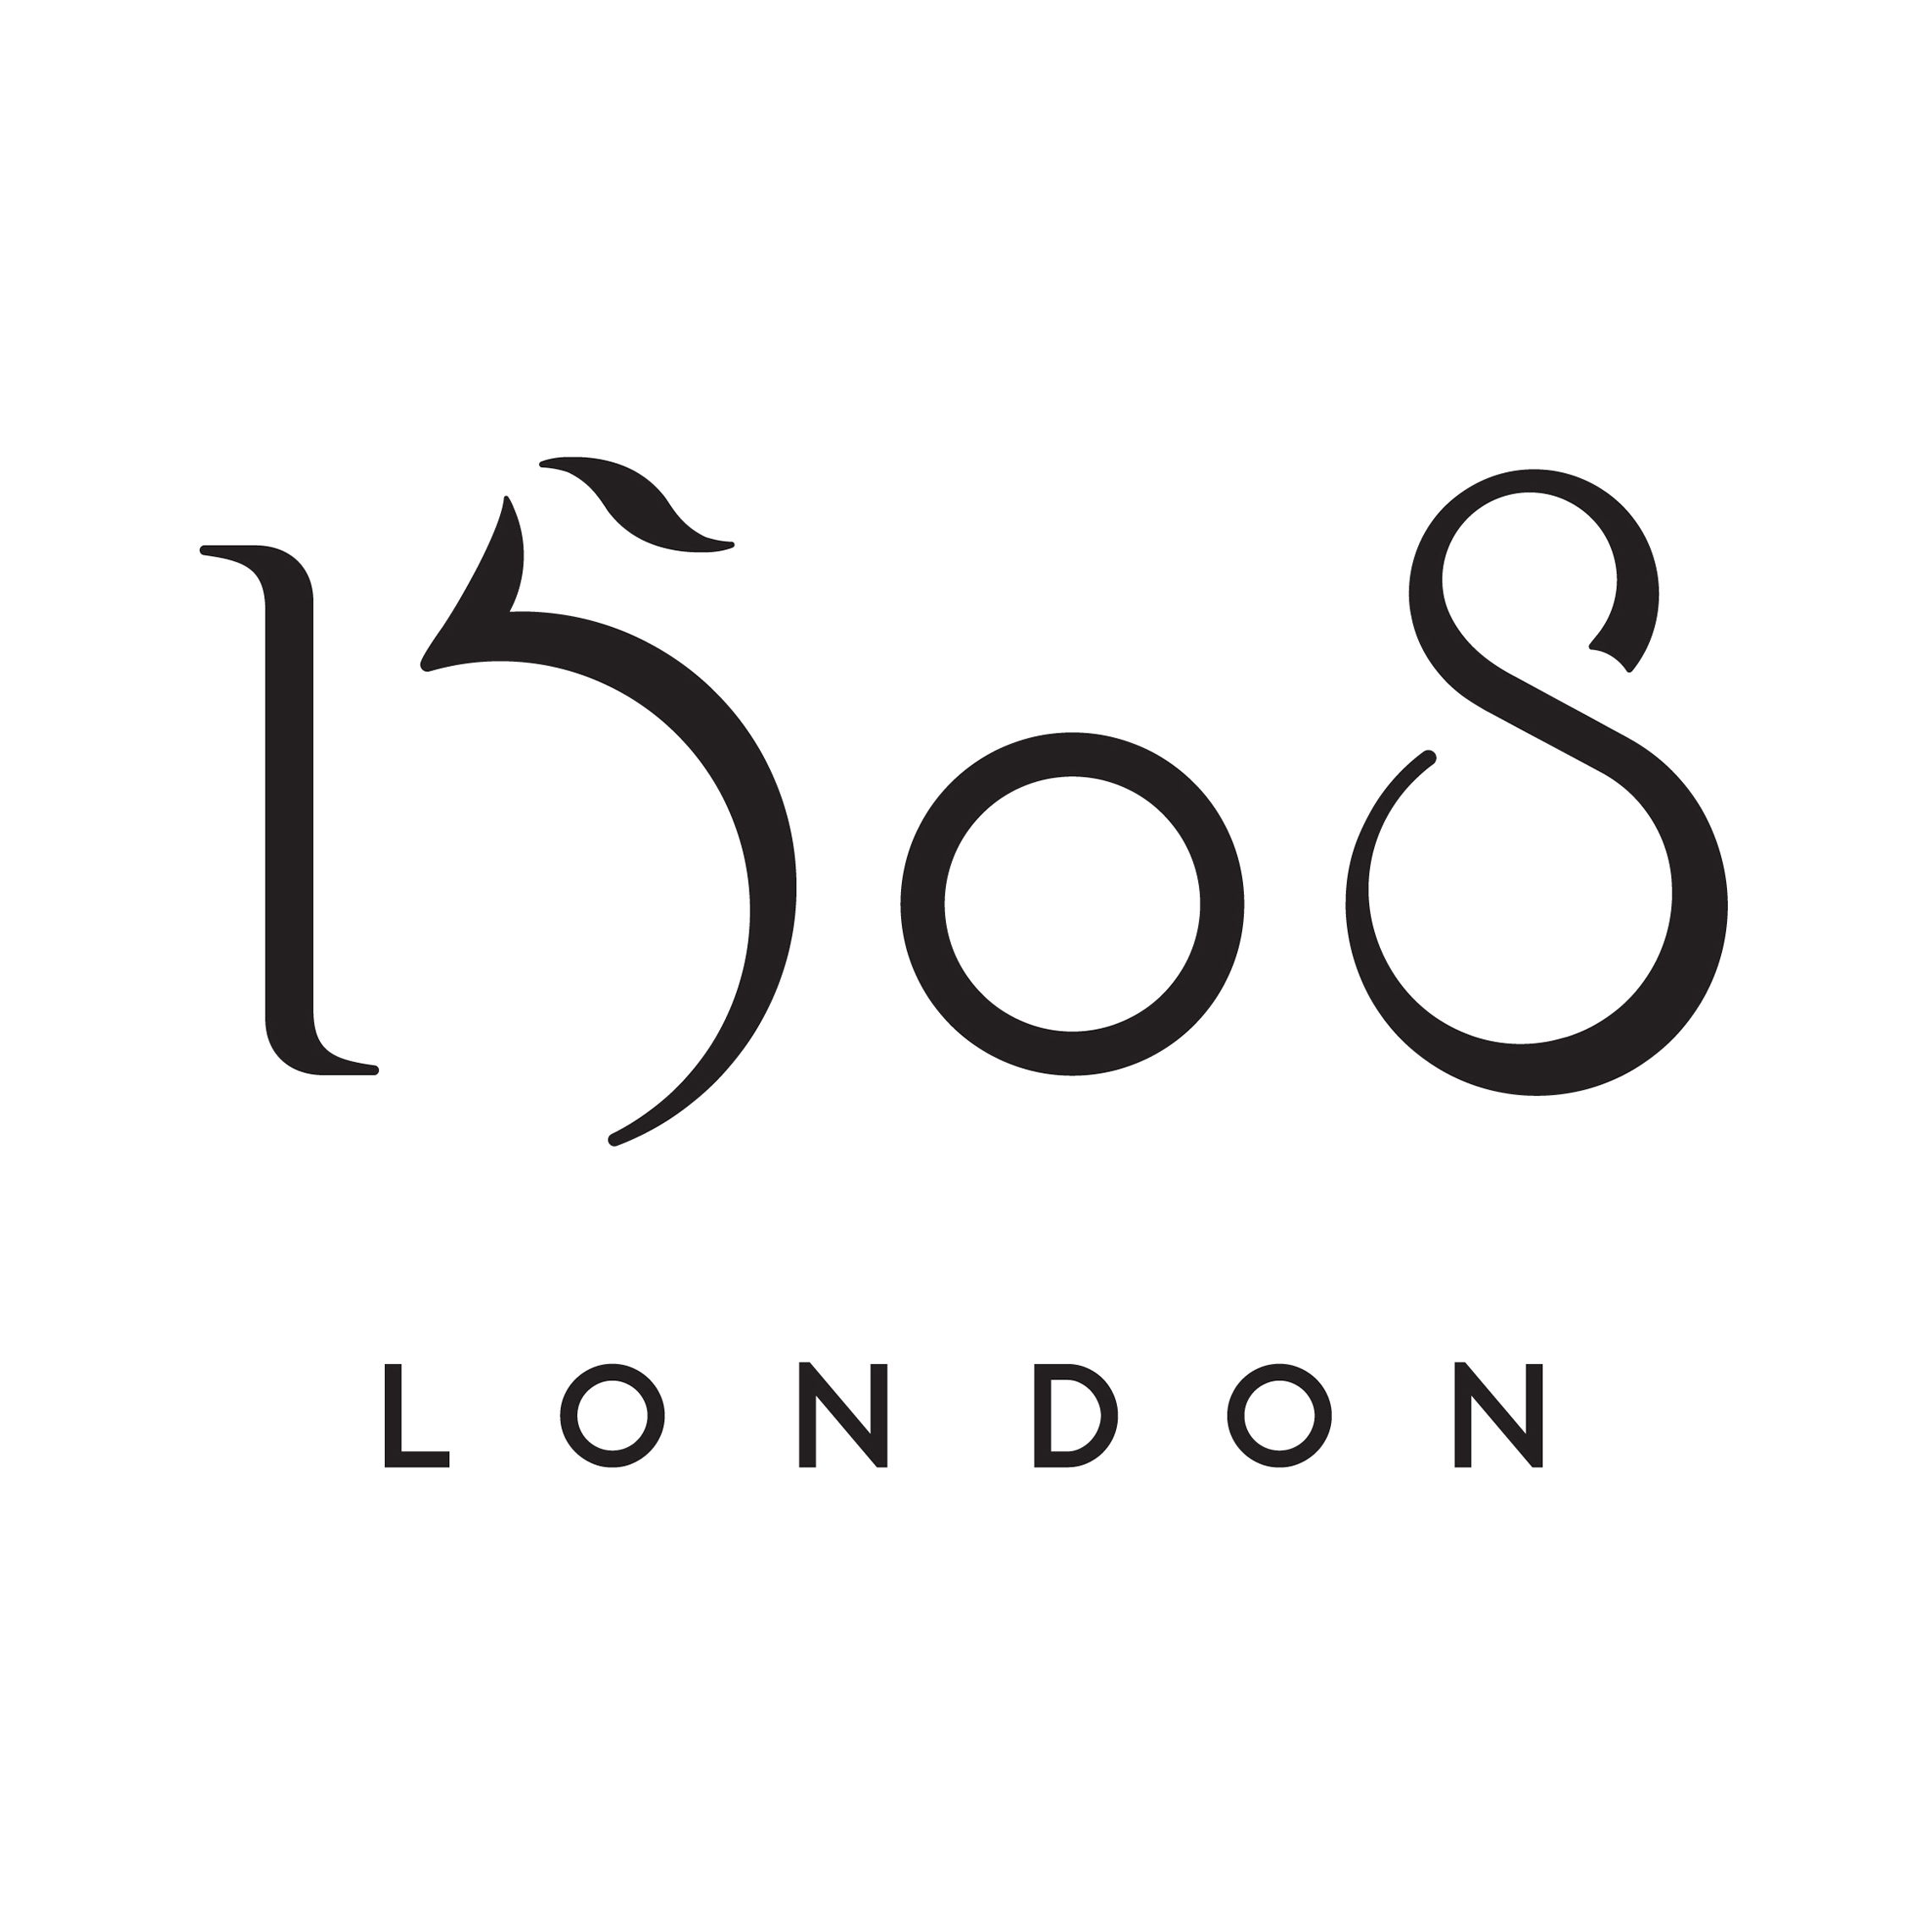 1508 London